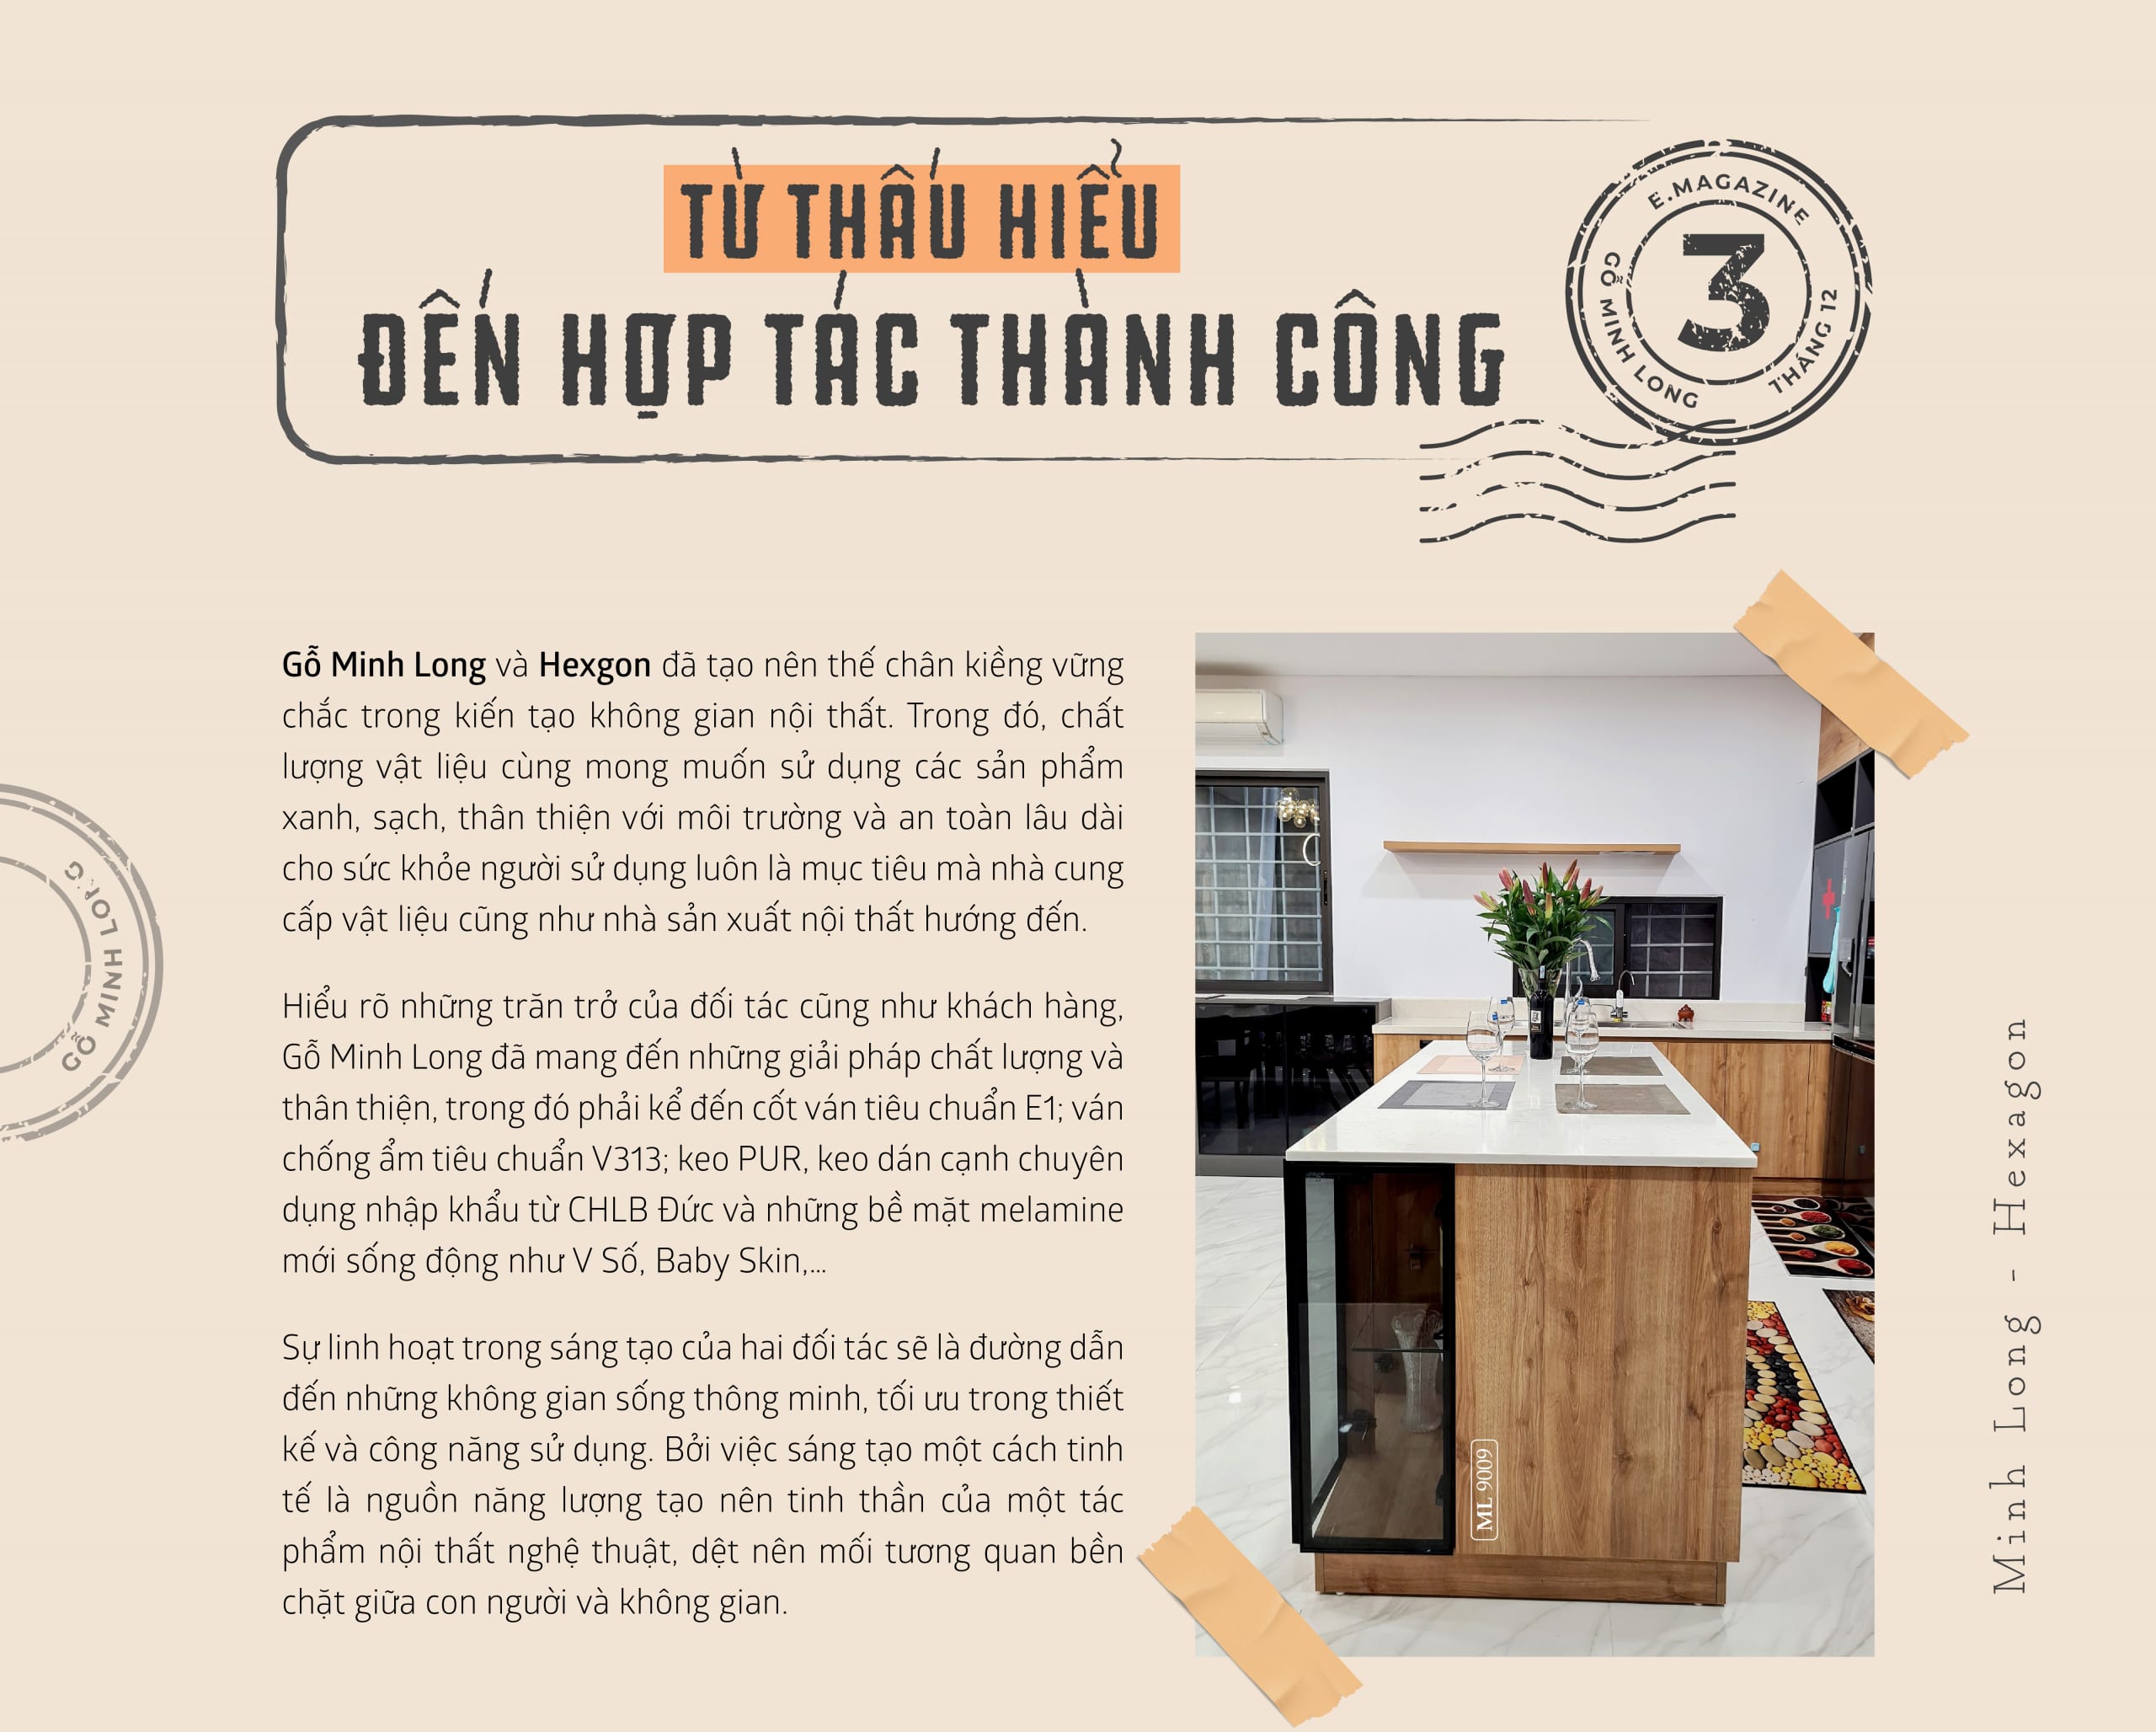 eMagazine12/2020: Minh Long & Hexagon - Gặp gỡ tạo nên khác biệt